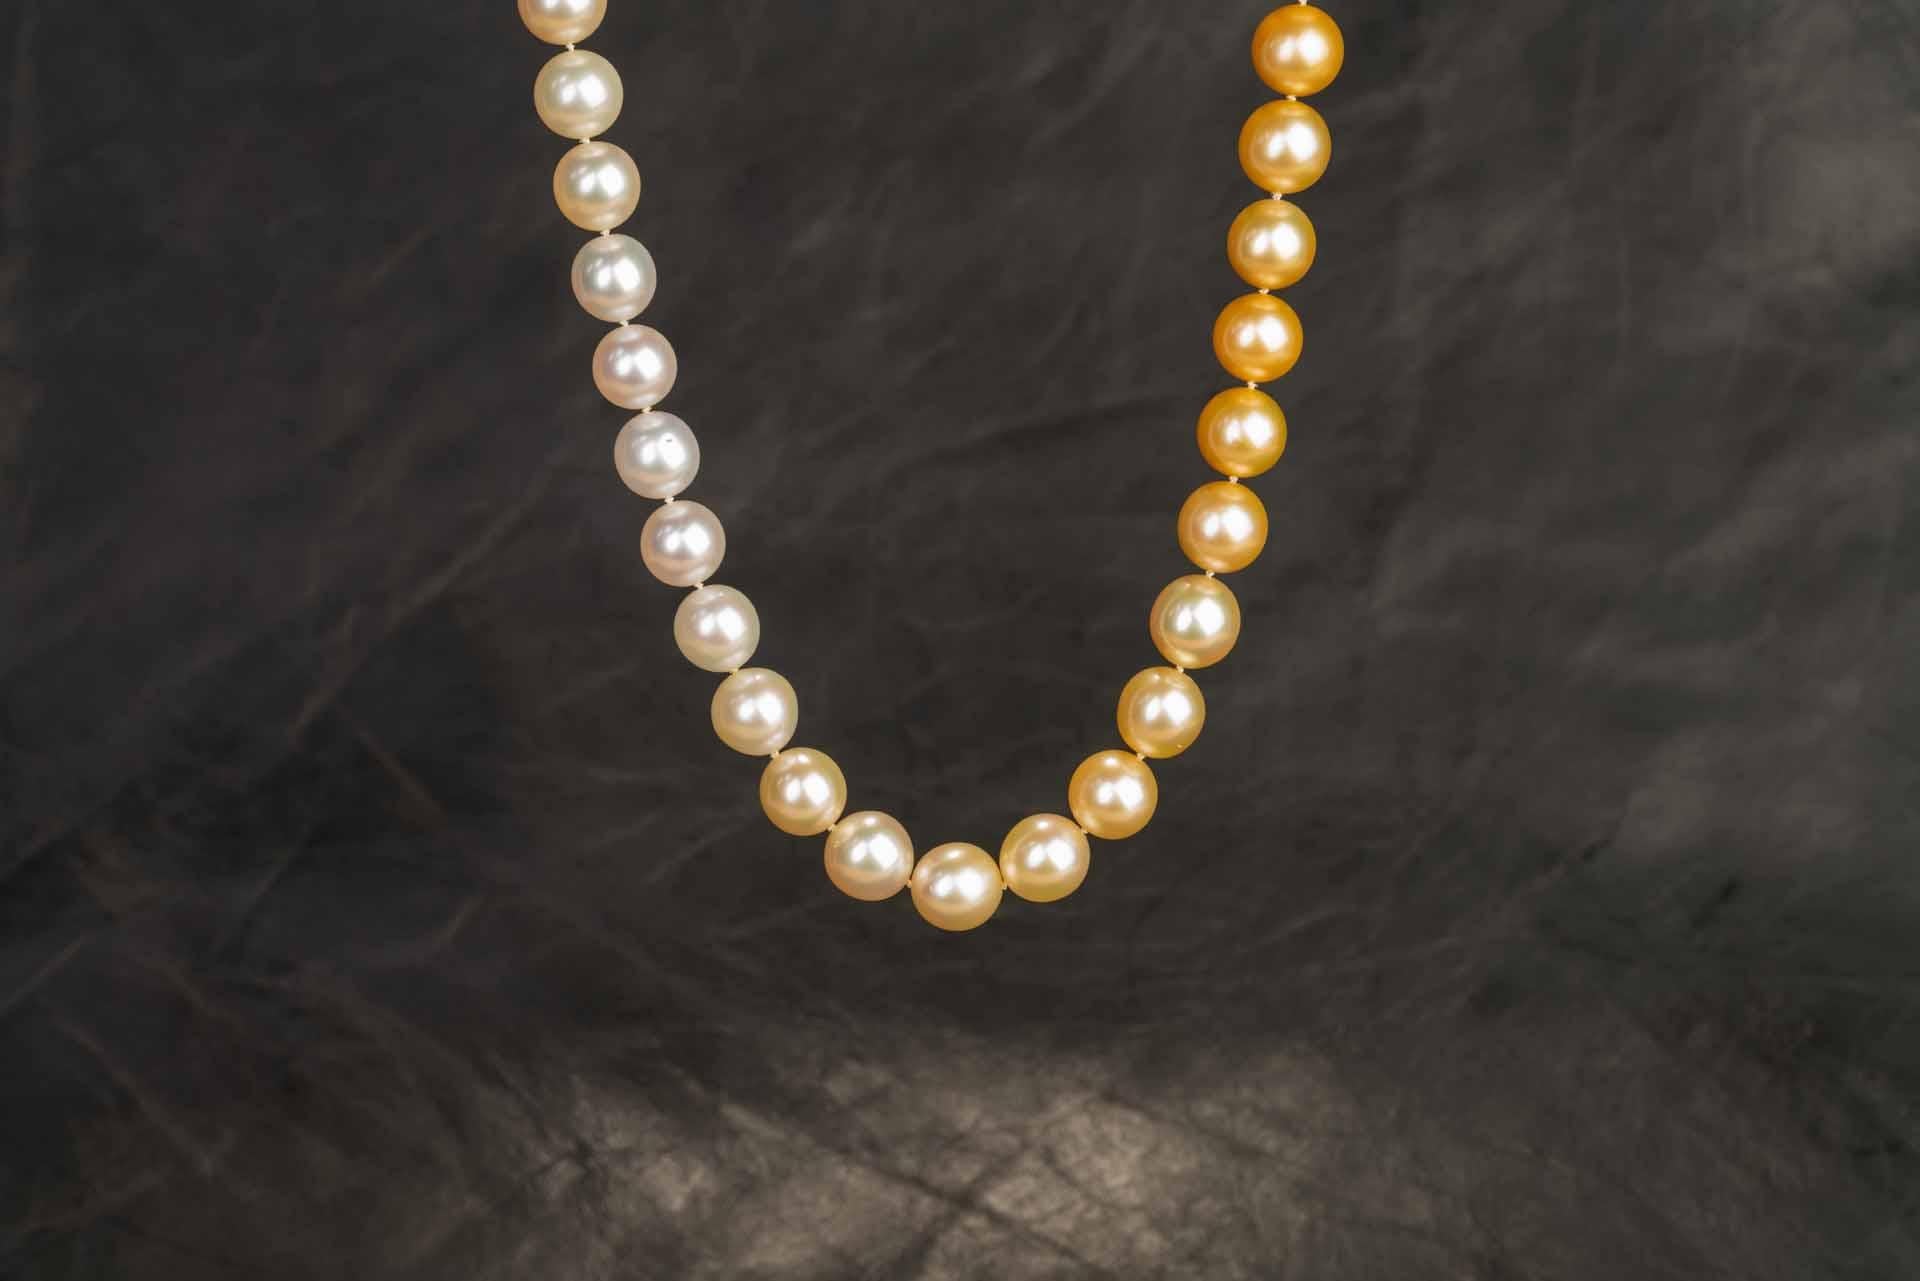 Ein Strang von 11-13mm mehrfarbigen weißen bis goldenen ombréd Jewelmer Südseeperlen, 24,5in in der Länge. Dieser Strang ist mit austauschbaren Verschlussteilen aus 18 Karat Gelbgold ausgestattet, die es ermöglichen, sie als nahtlosen Perlenstrang